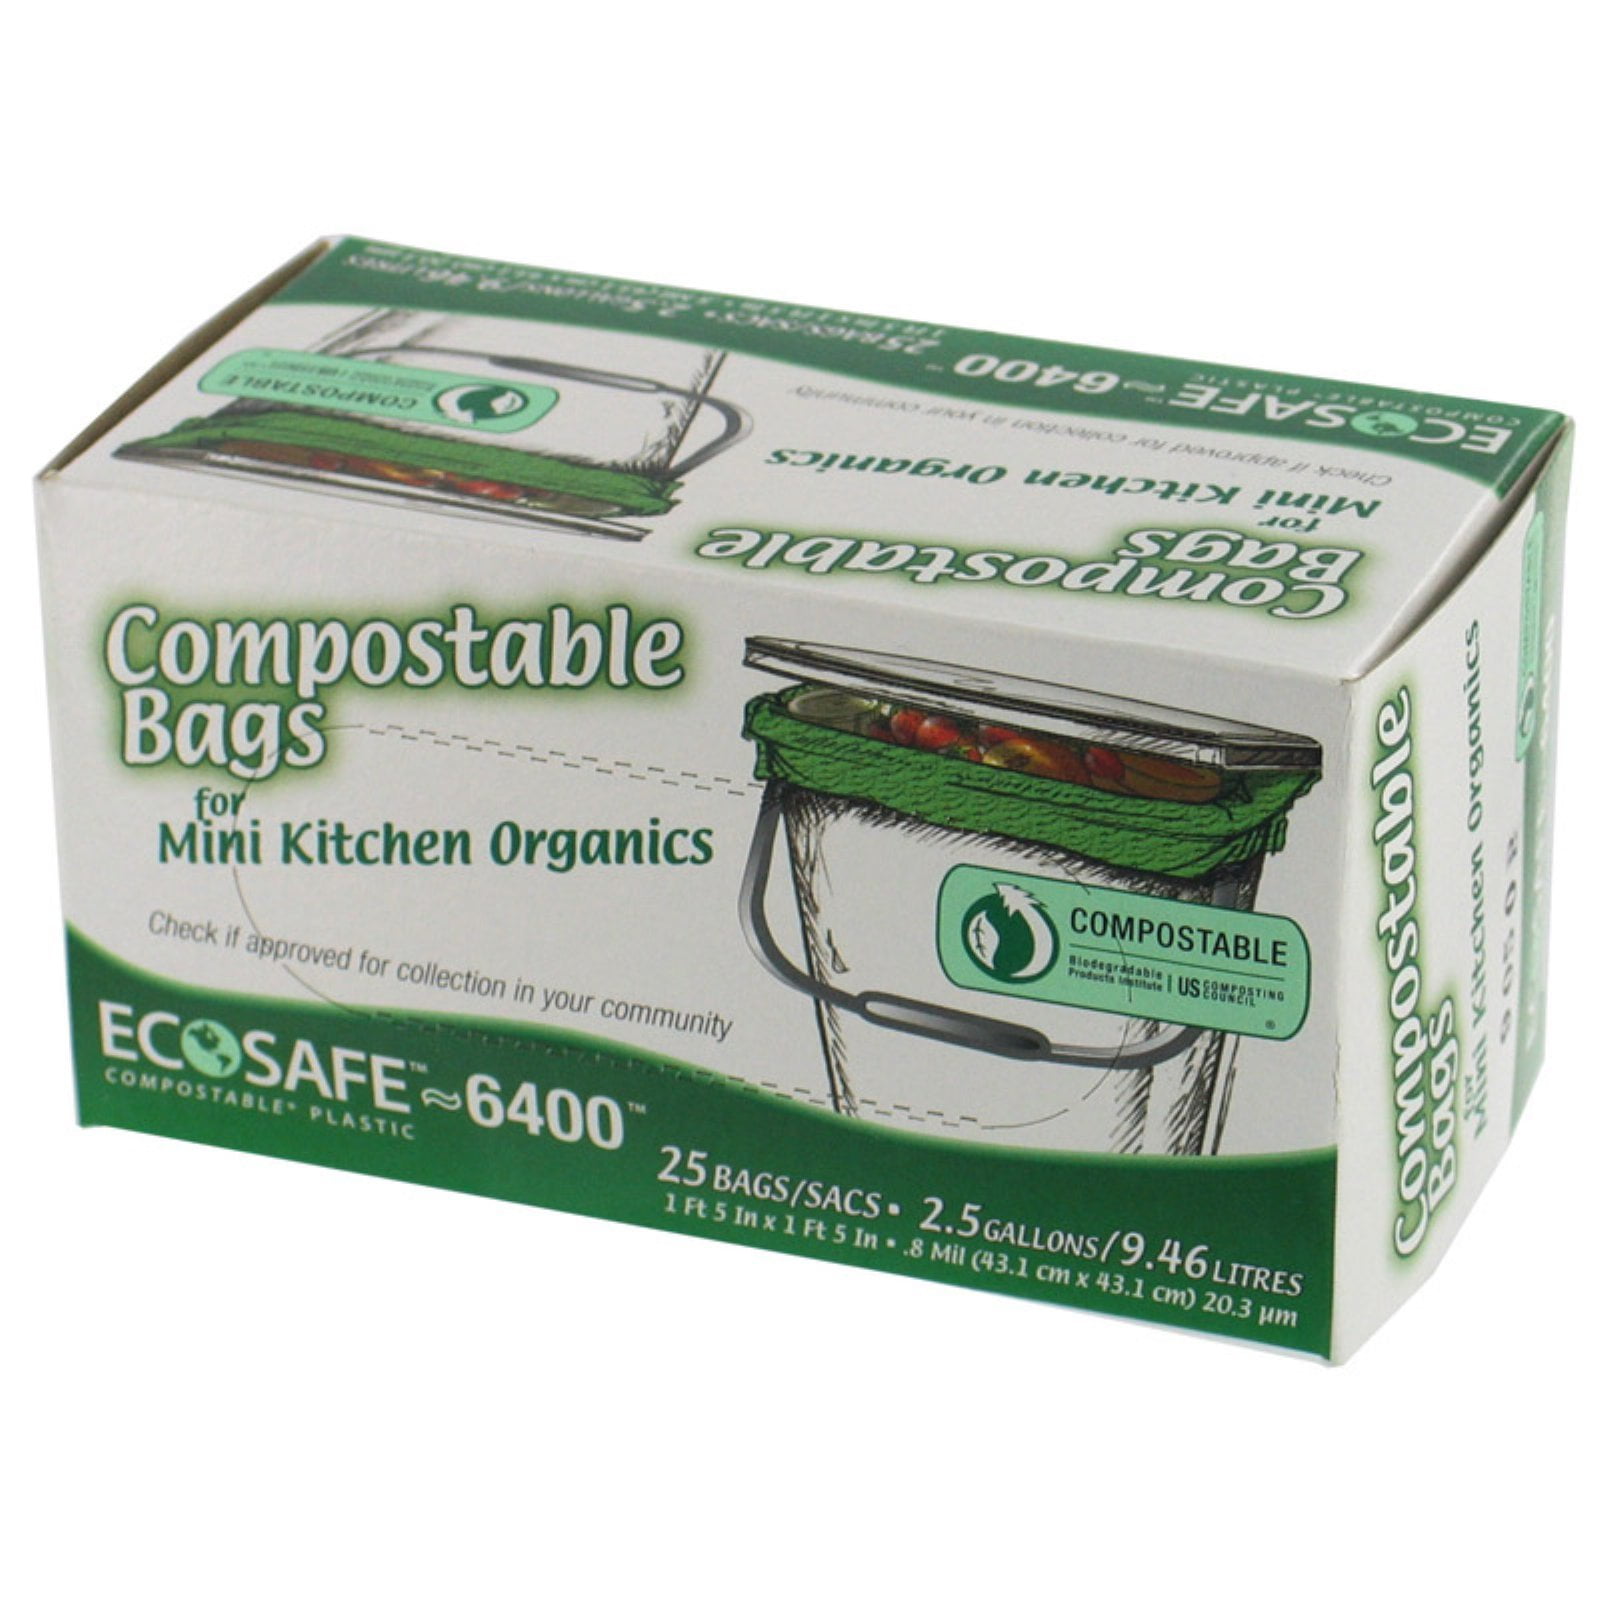 Gkl032195 Ecosafe-6400 Compostable Food Waste Trash Bag for sale online 